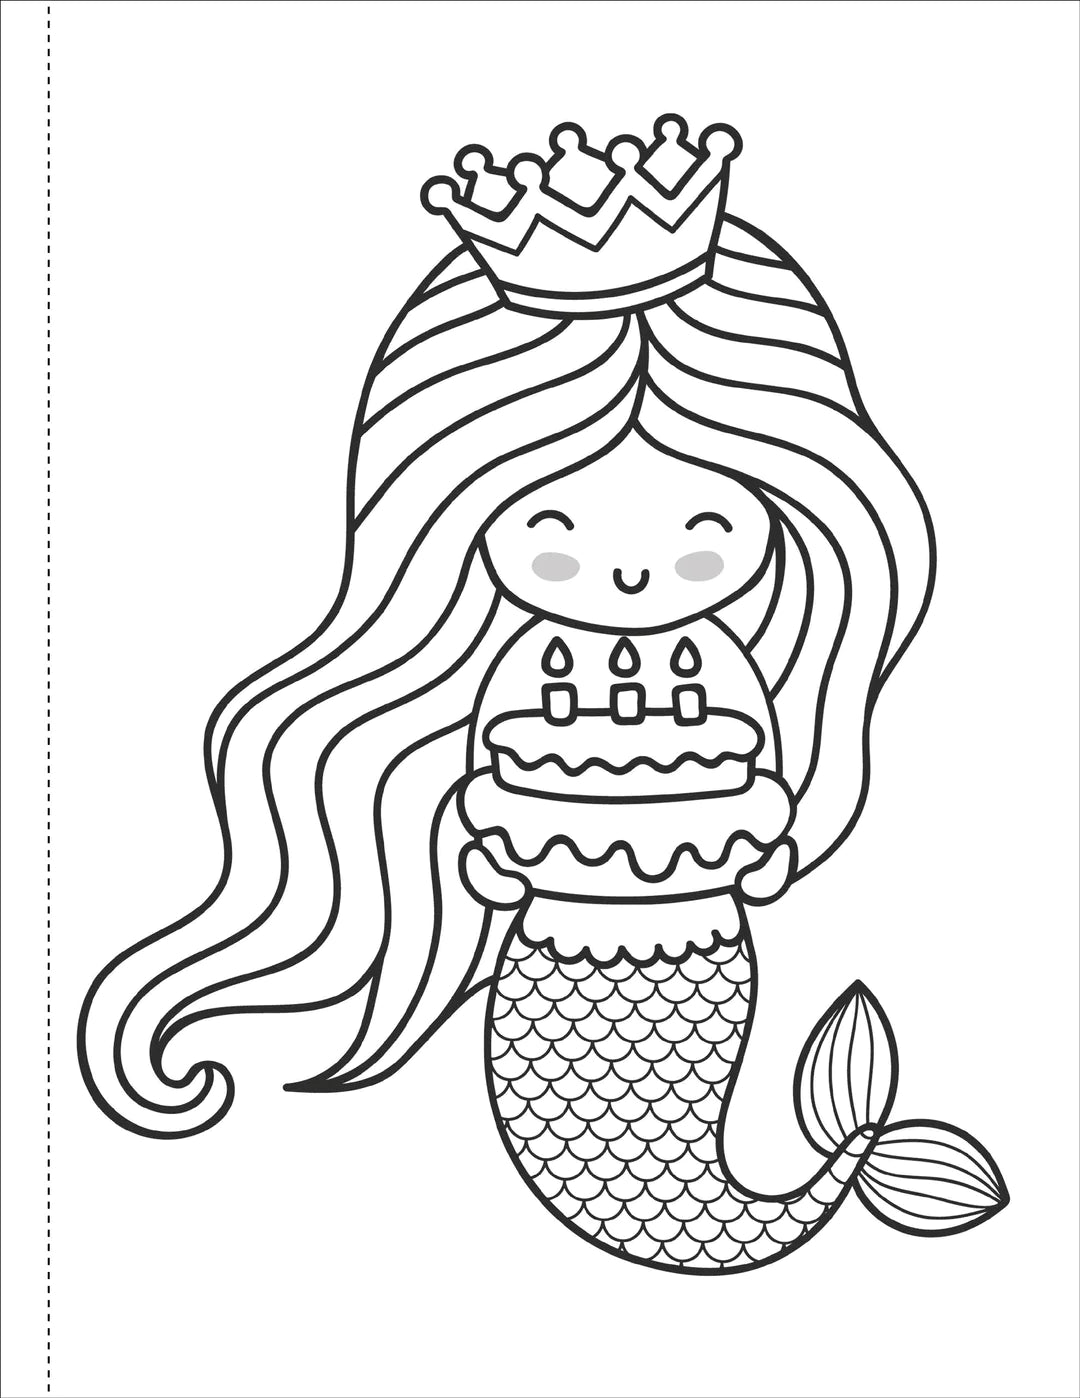 Mermaids Coloring Book